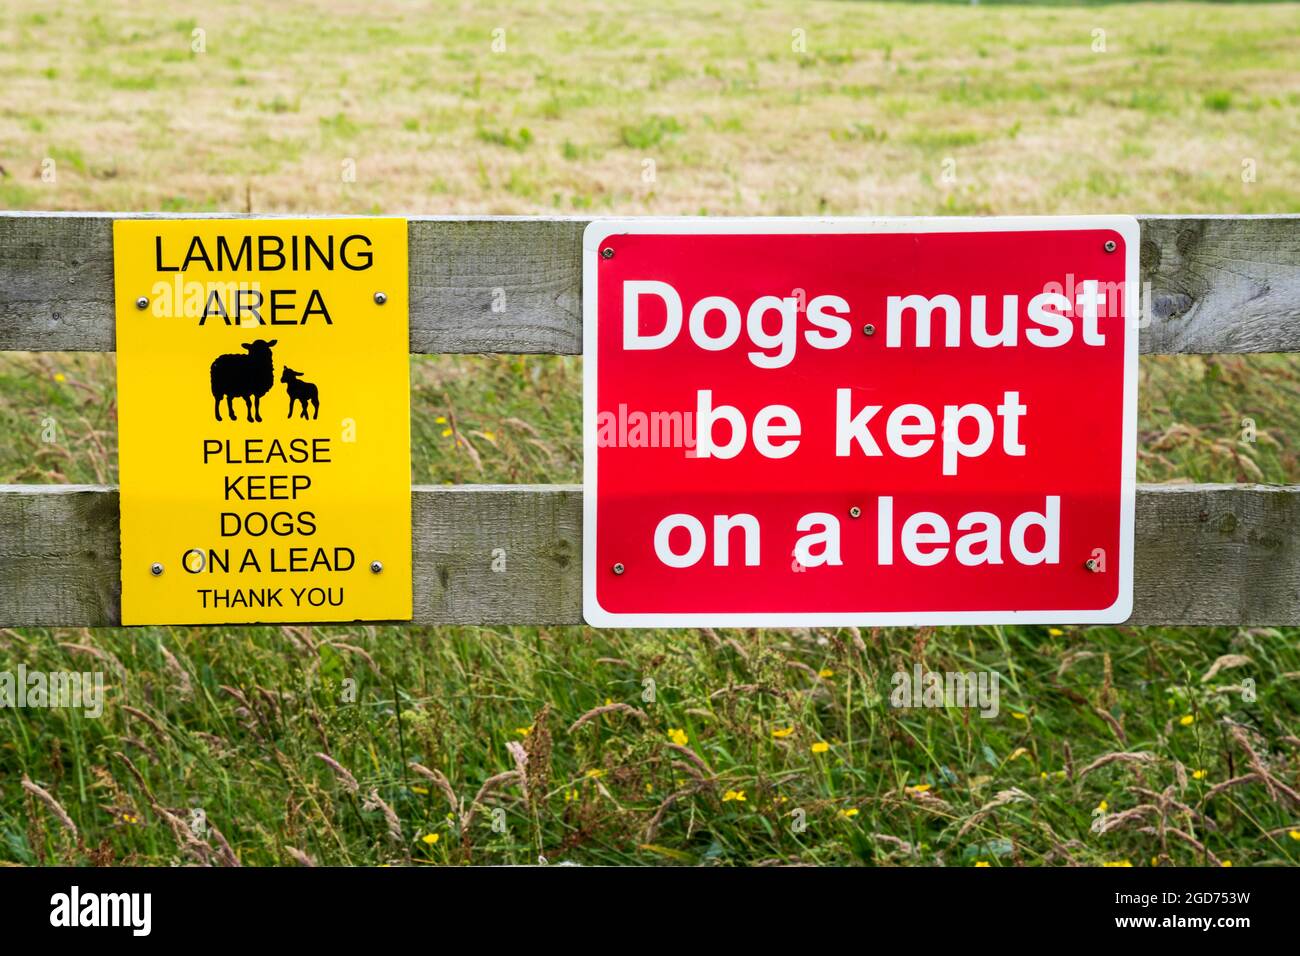 Schilder, die darauf hinweisen, dass Hunde im Lammbereich an einer Leine gehalten werden müssen. Stockfoto